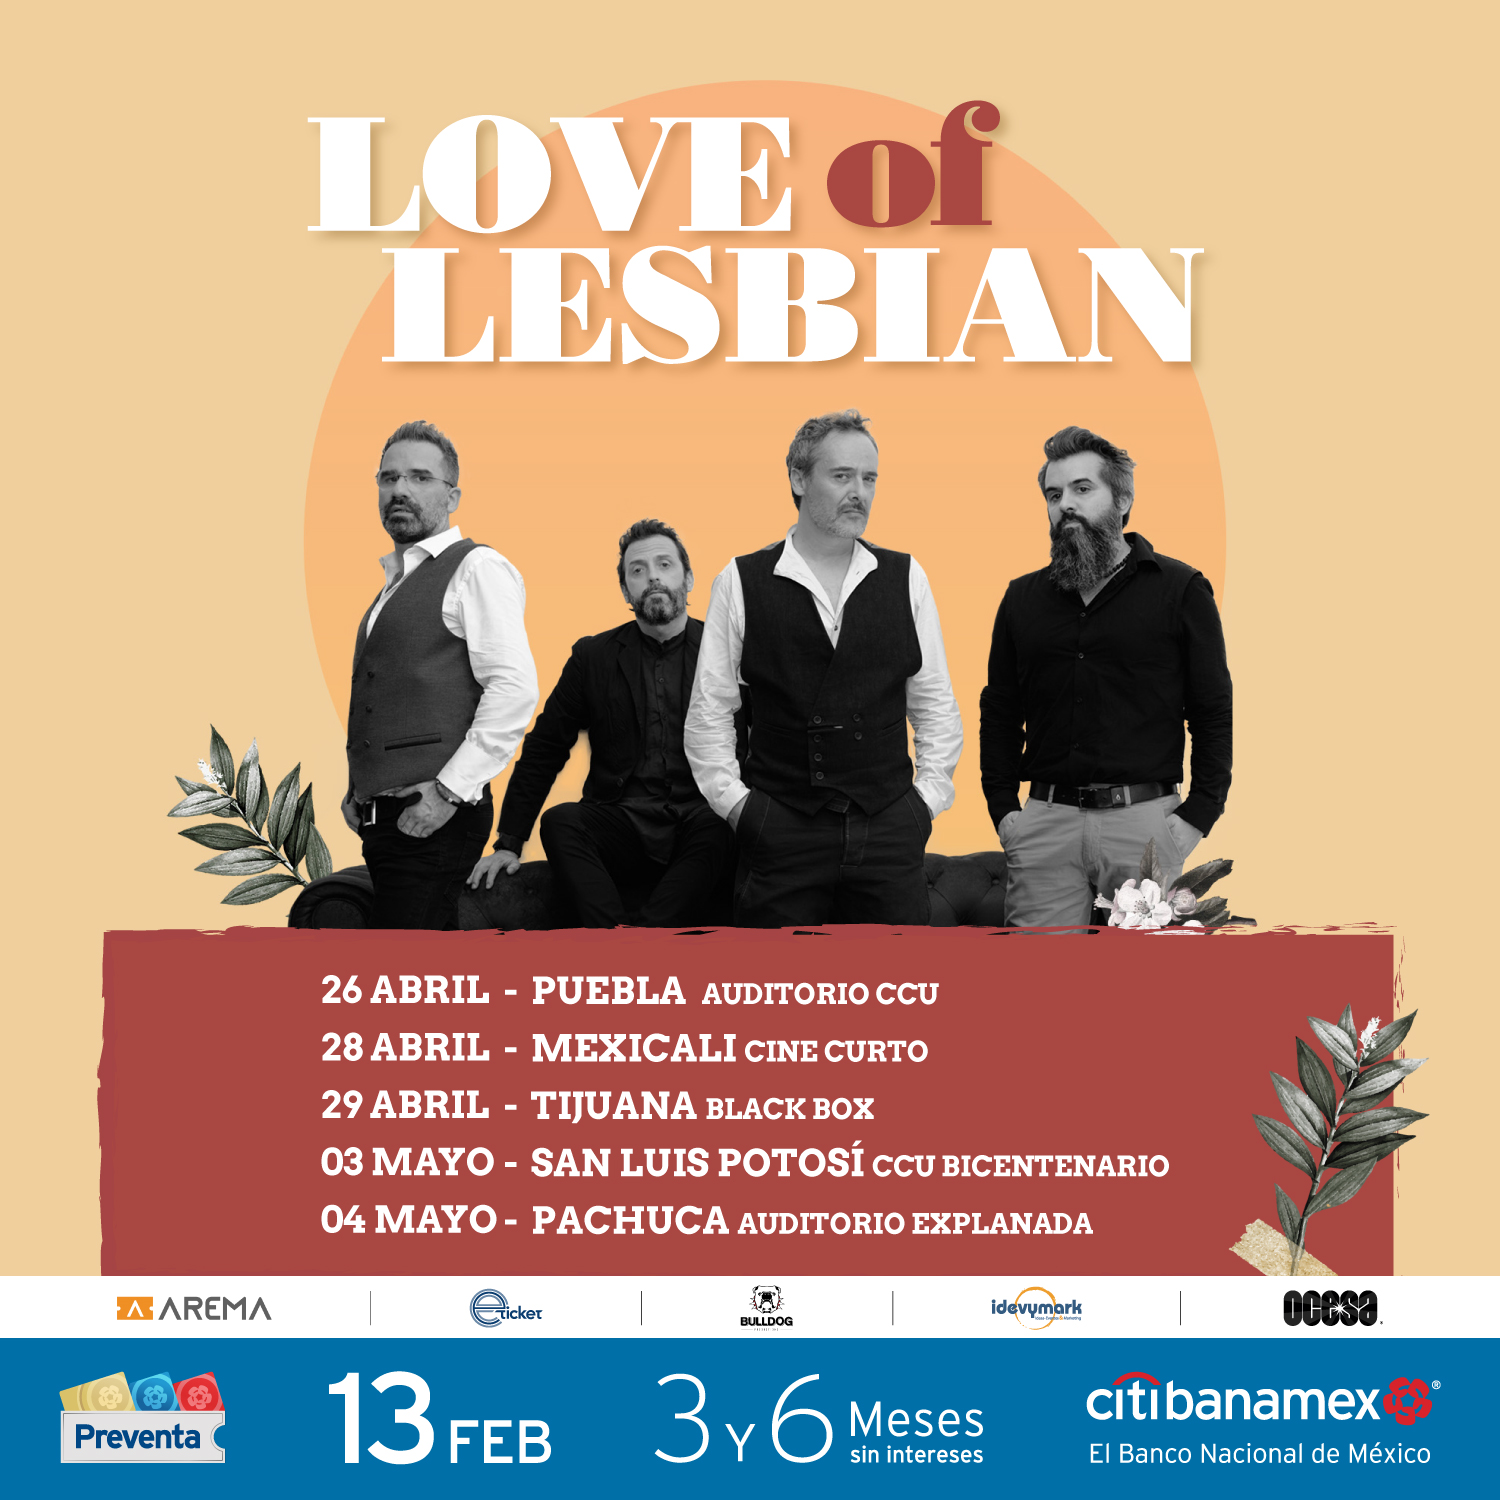 11 de abril love of lesbian 20 aniversario